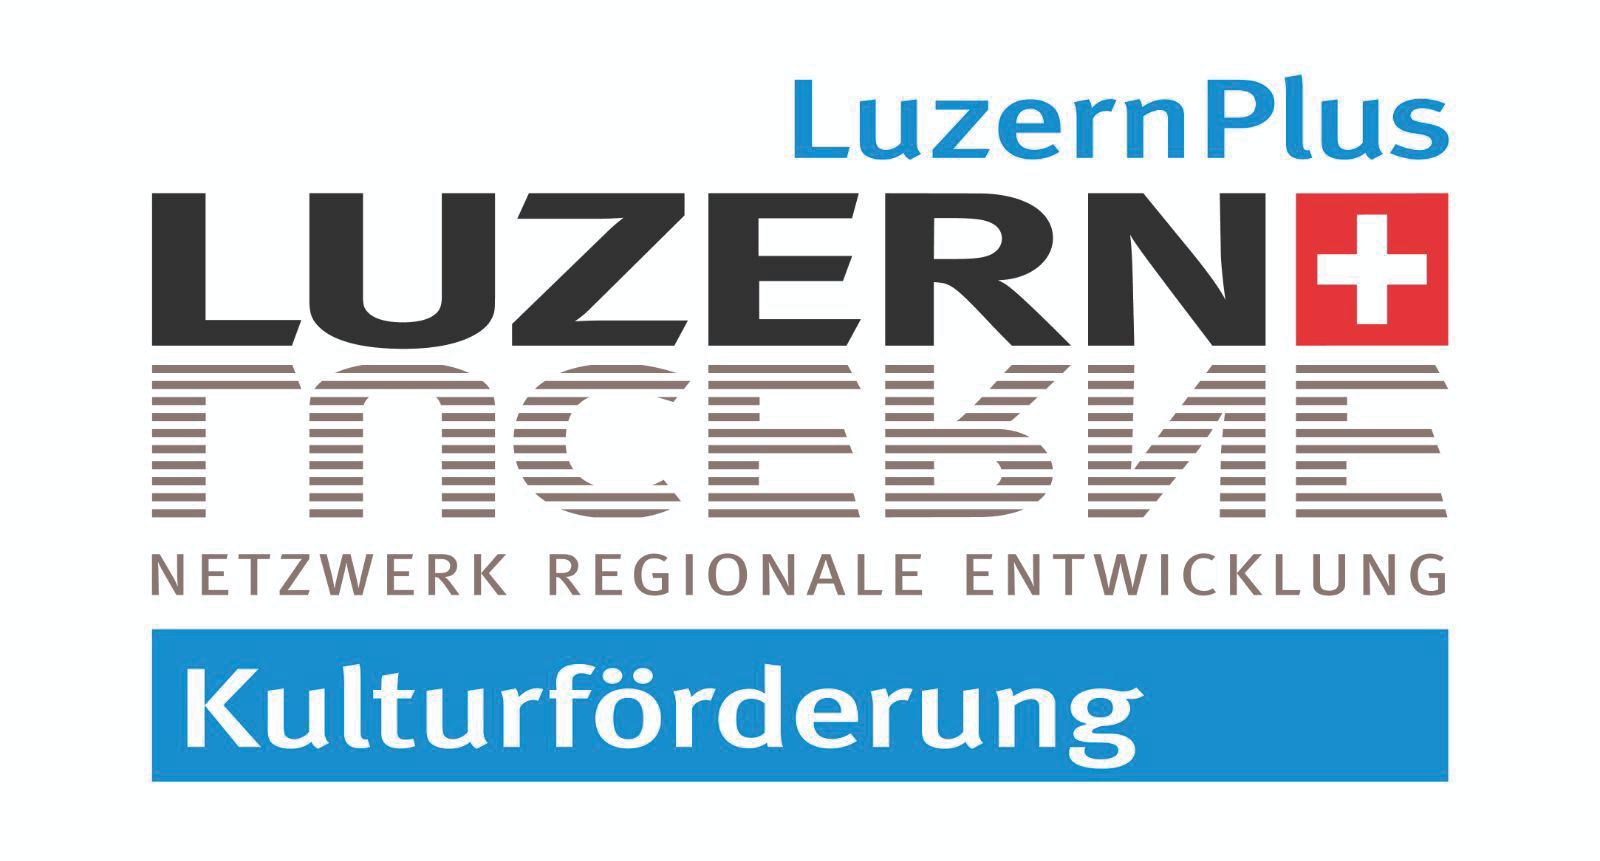 'Sponsorenlogo von RKK / LuzernPlus